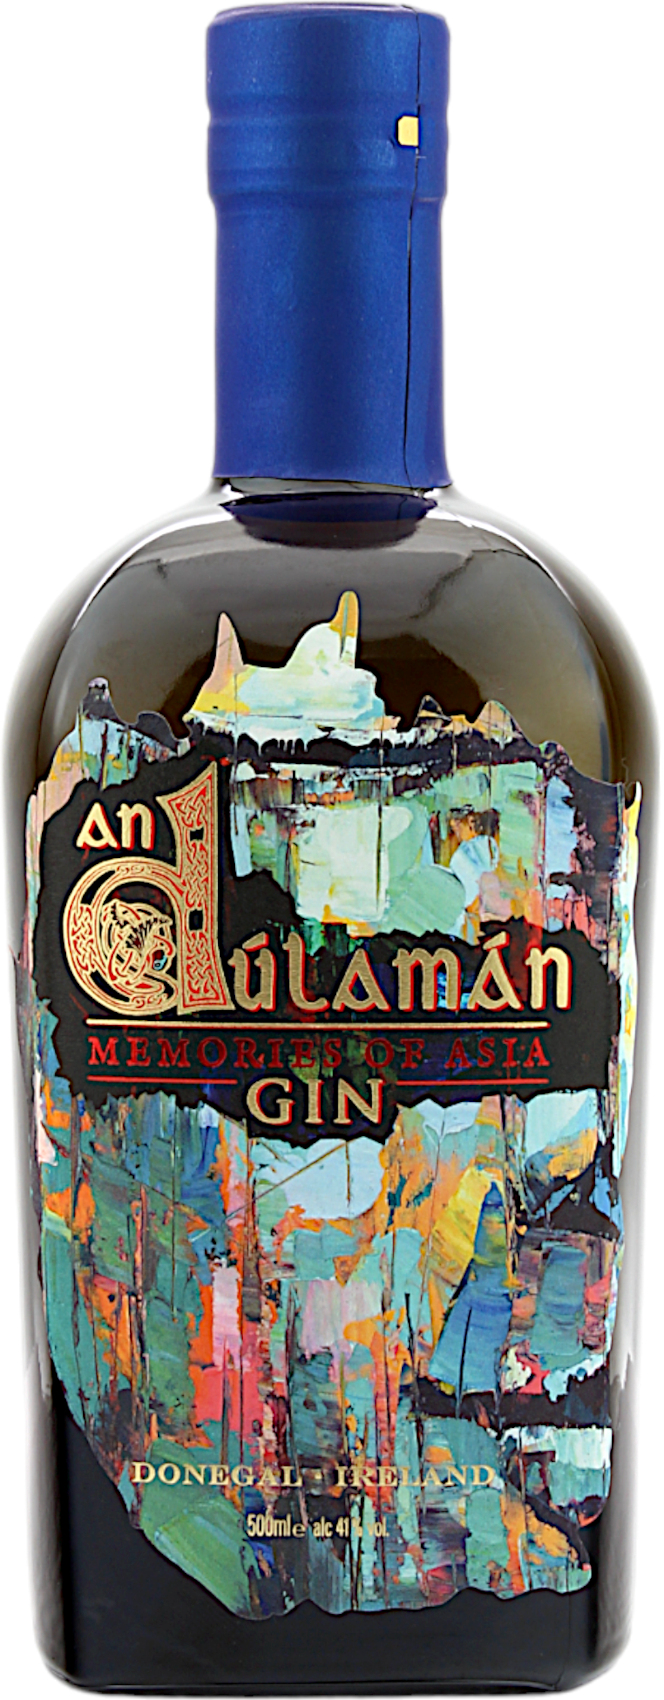 An Dulaman Memories of Asia Gin 41.0% 0,5l